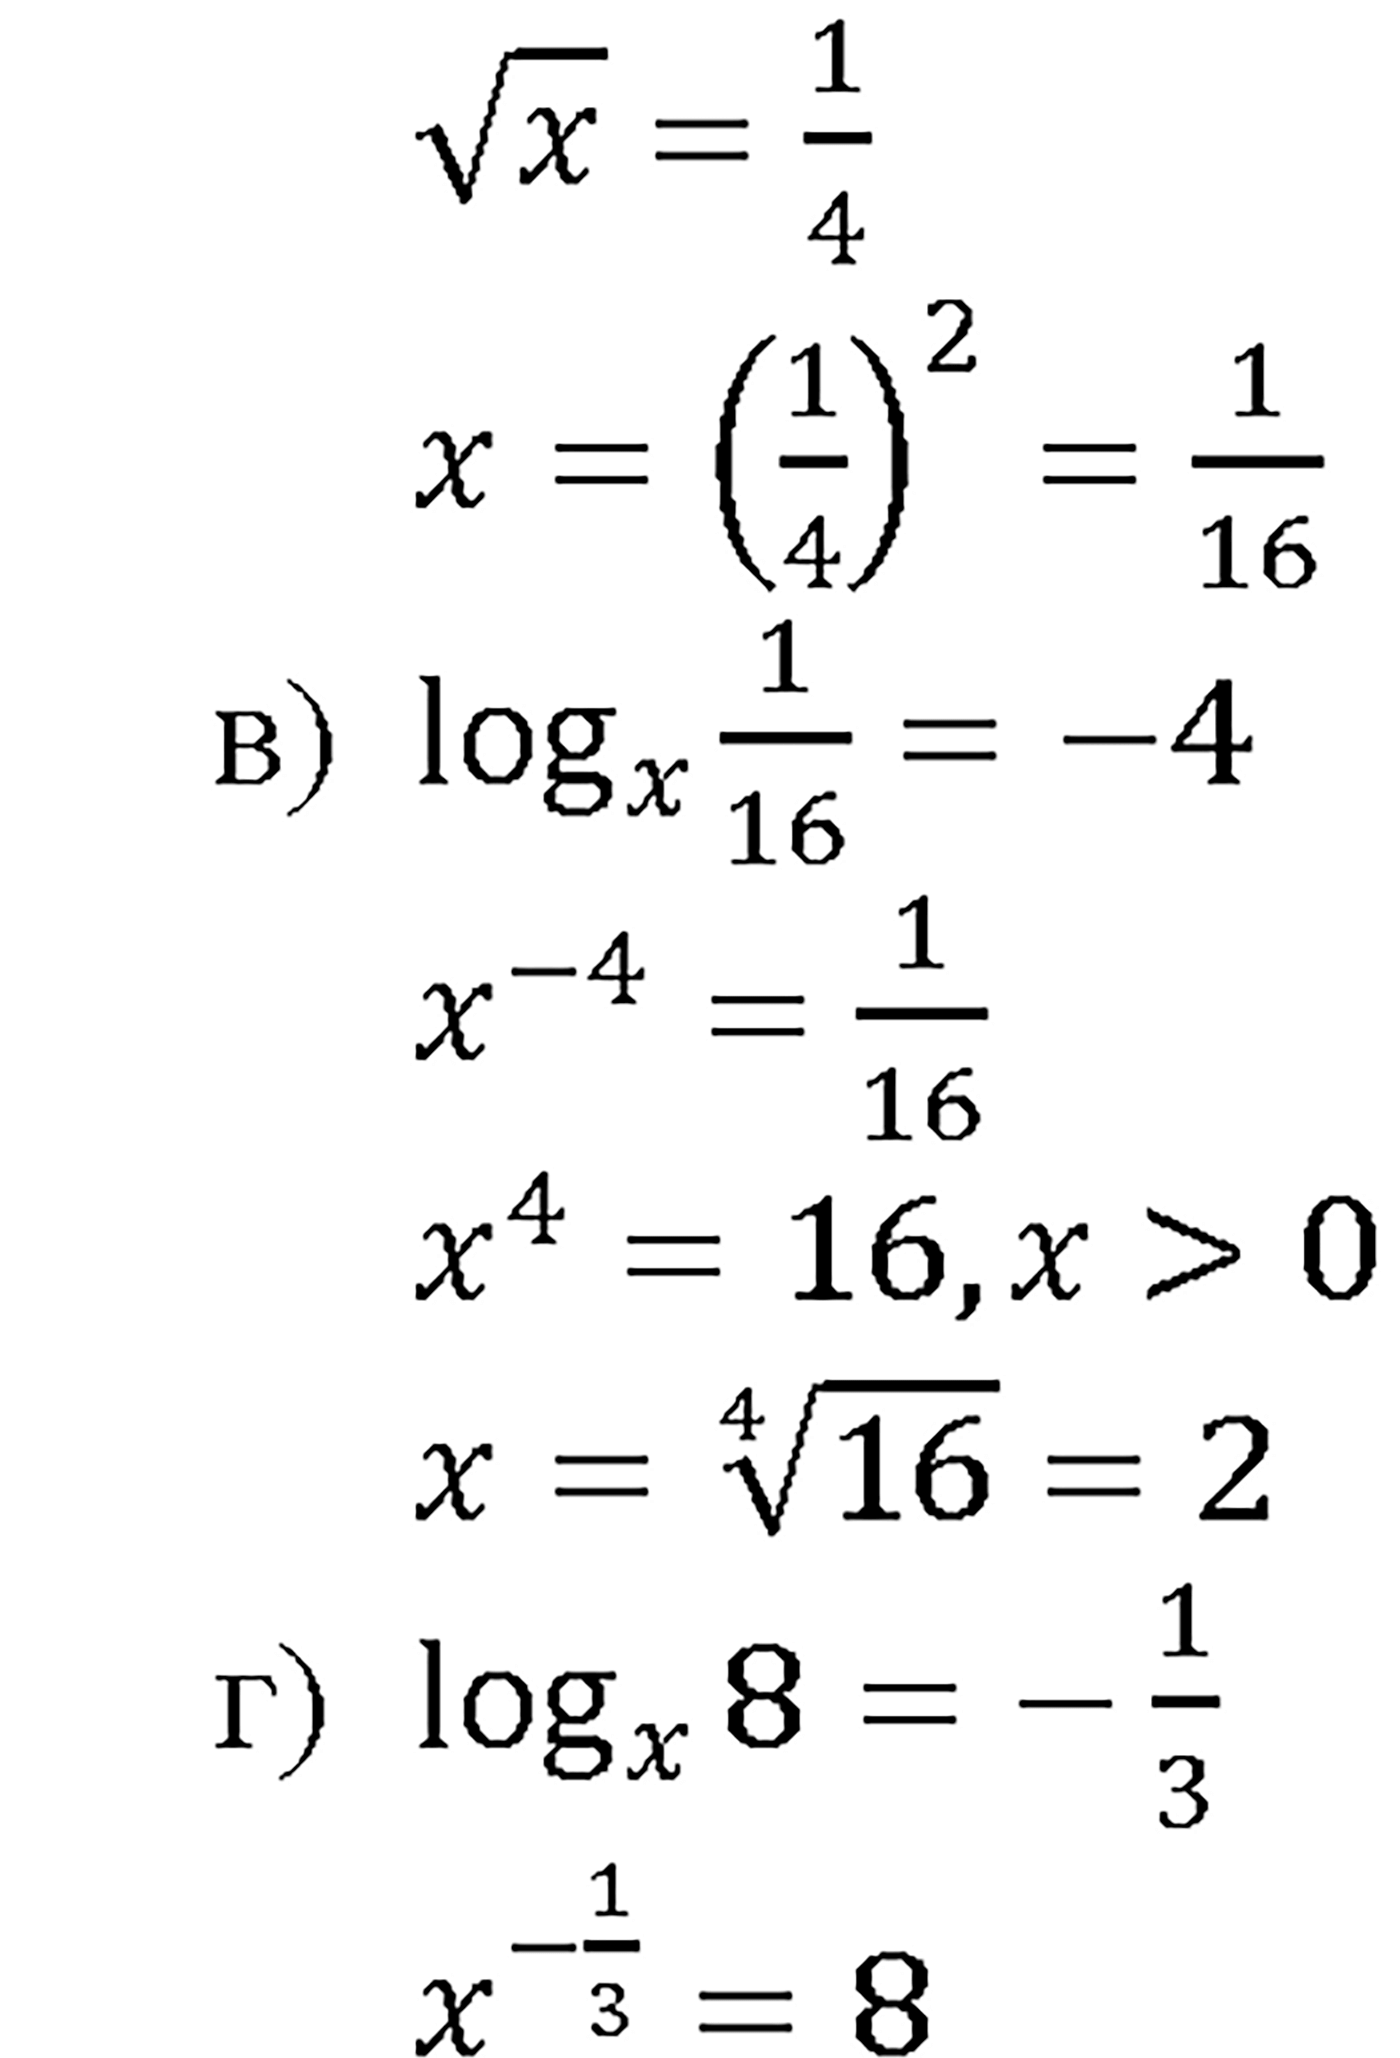 задача №41.14 алгебра 10-11 класс Мордкович